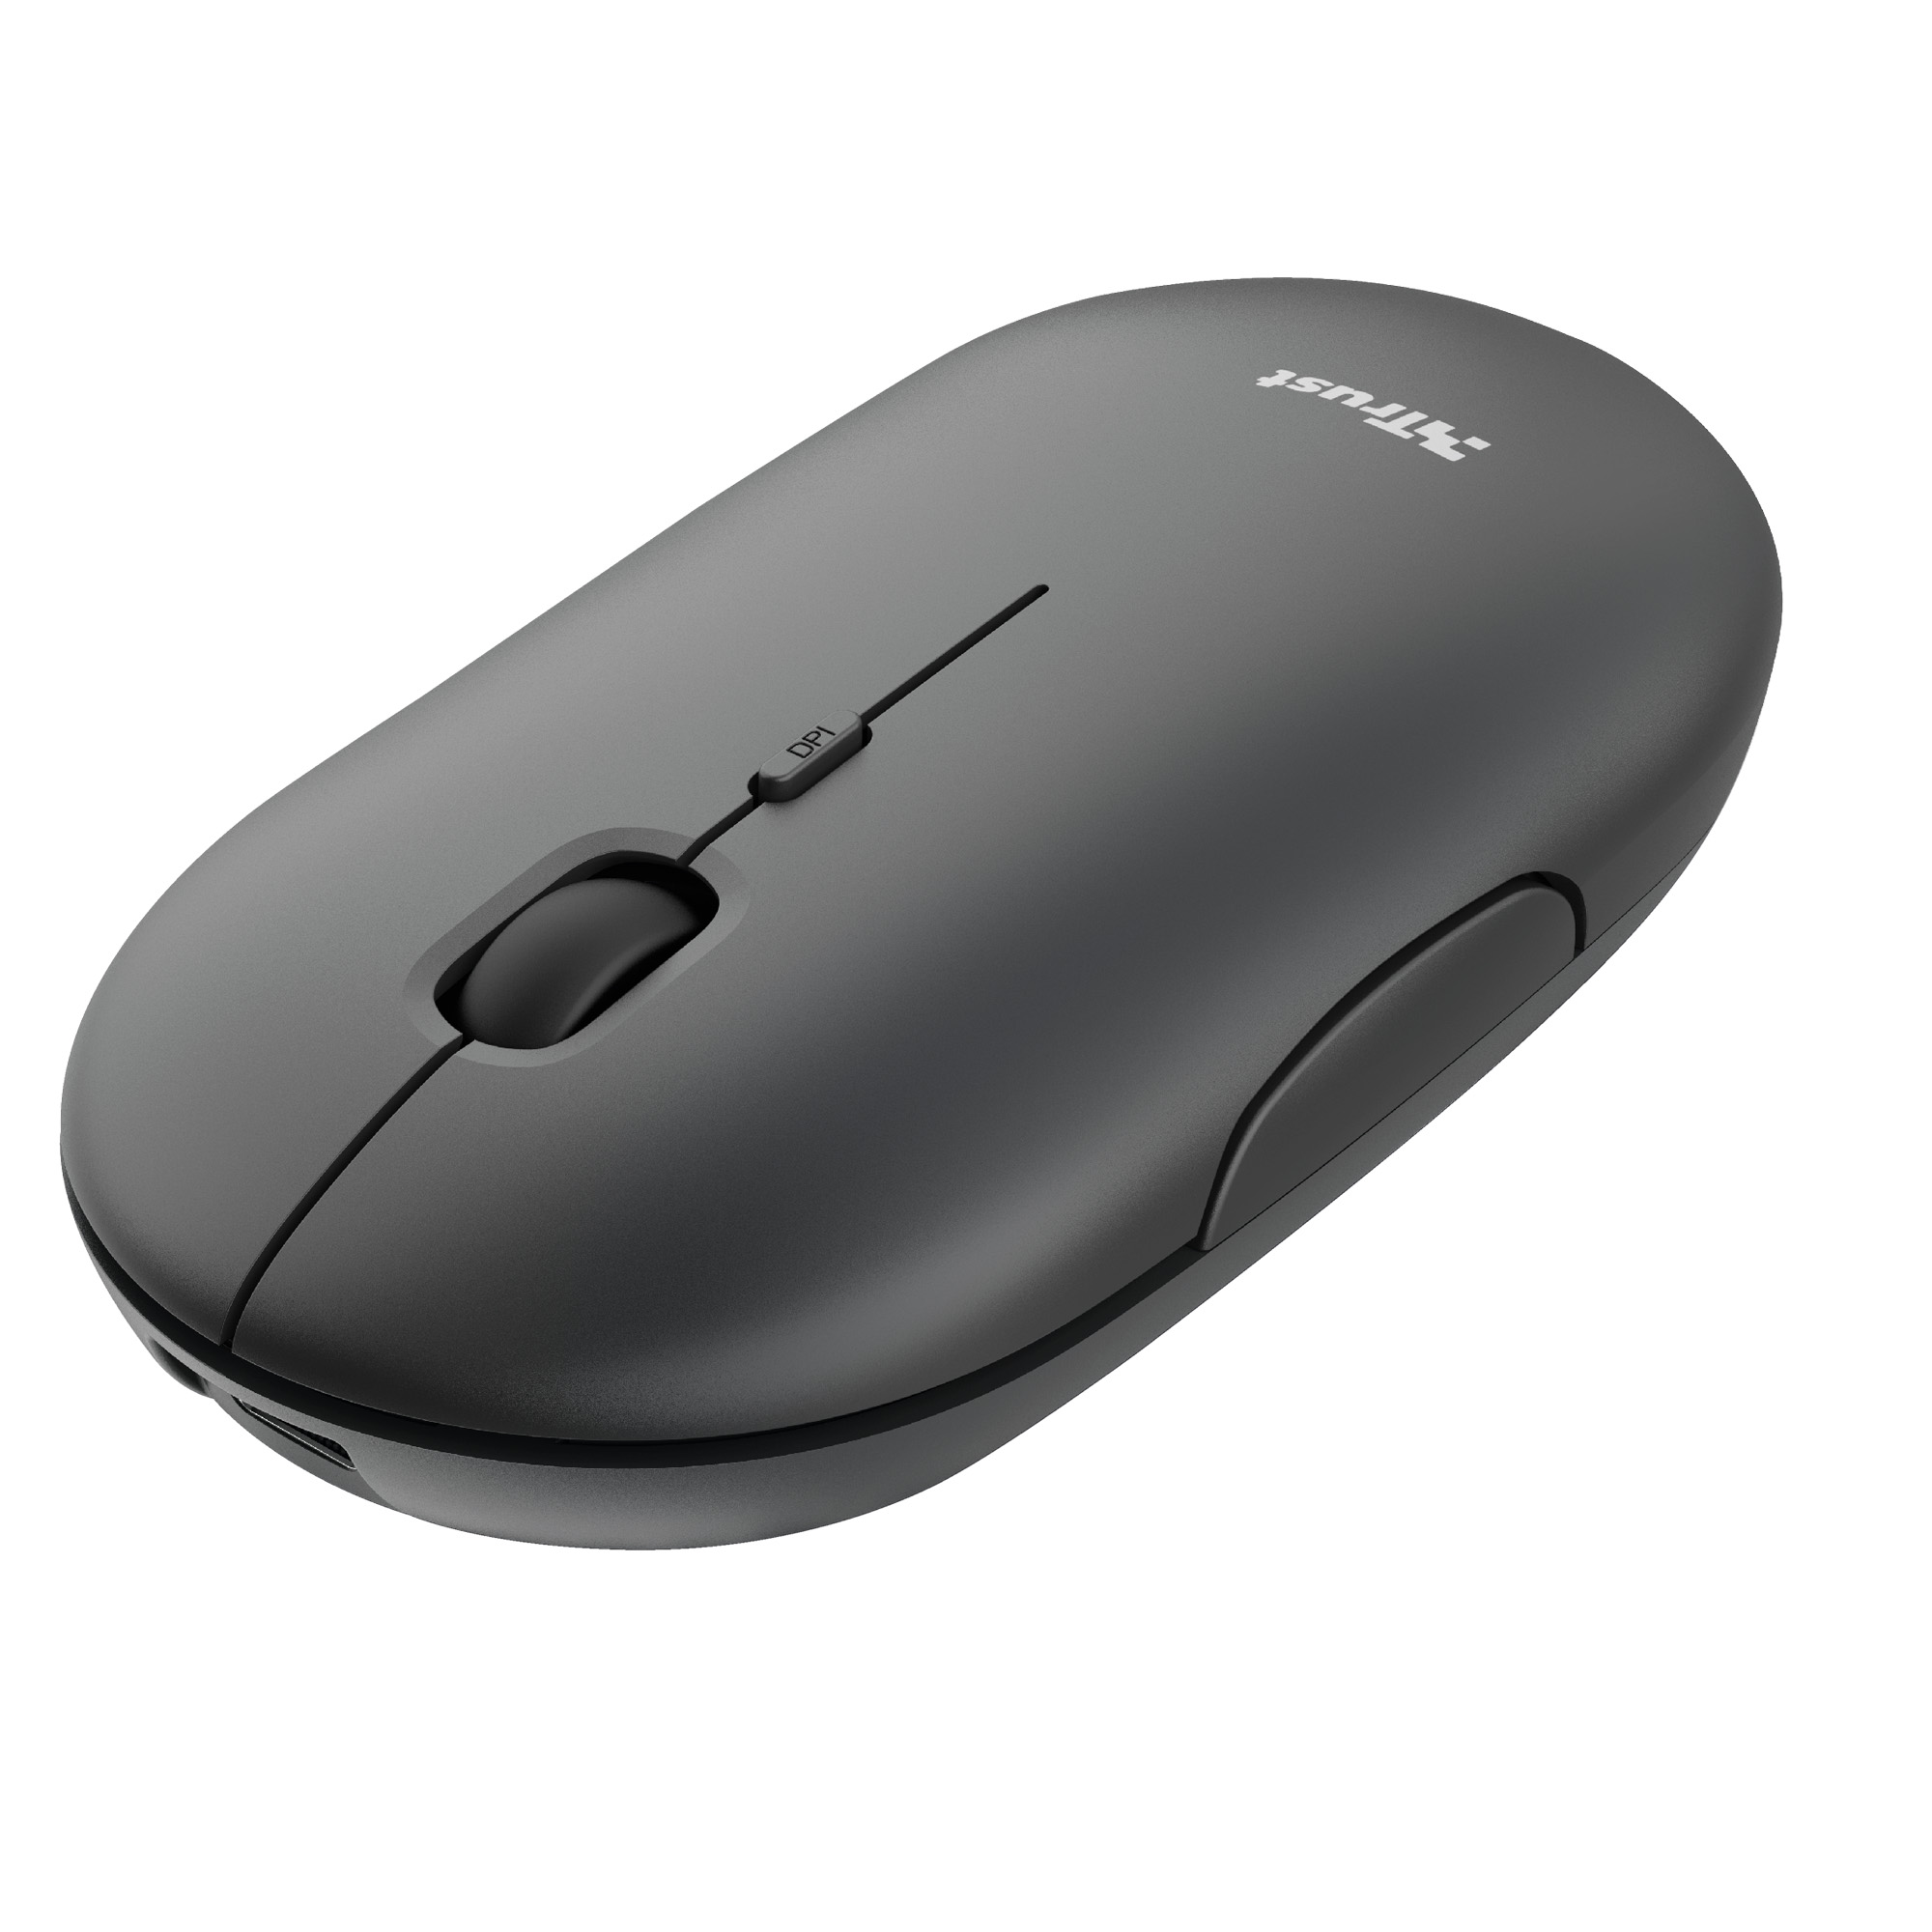 Mouse ergonomico Bayo - wireless con filo - Trust su